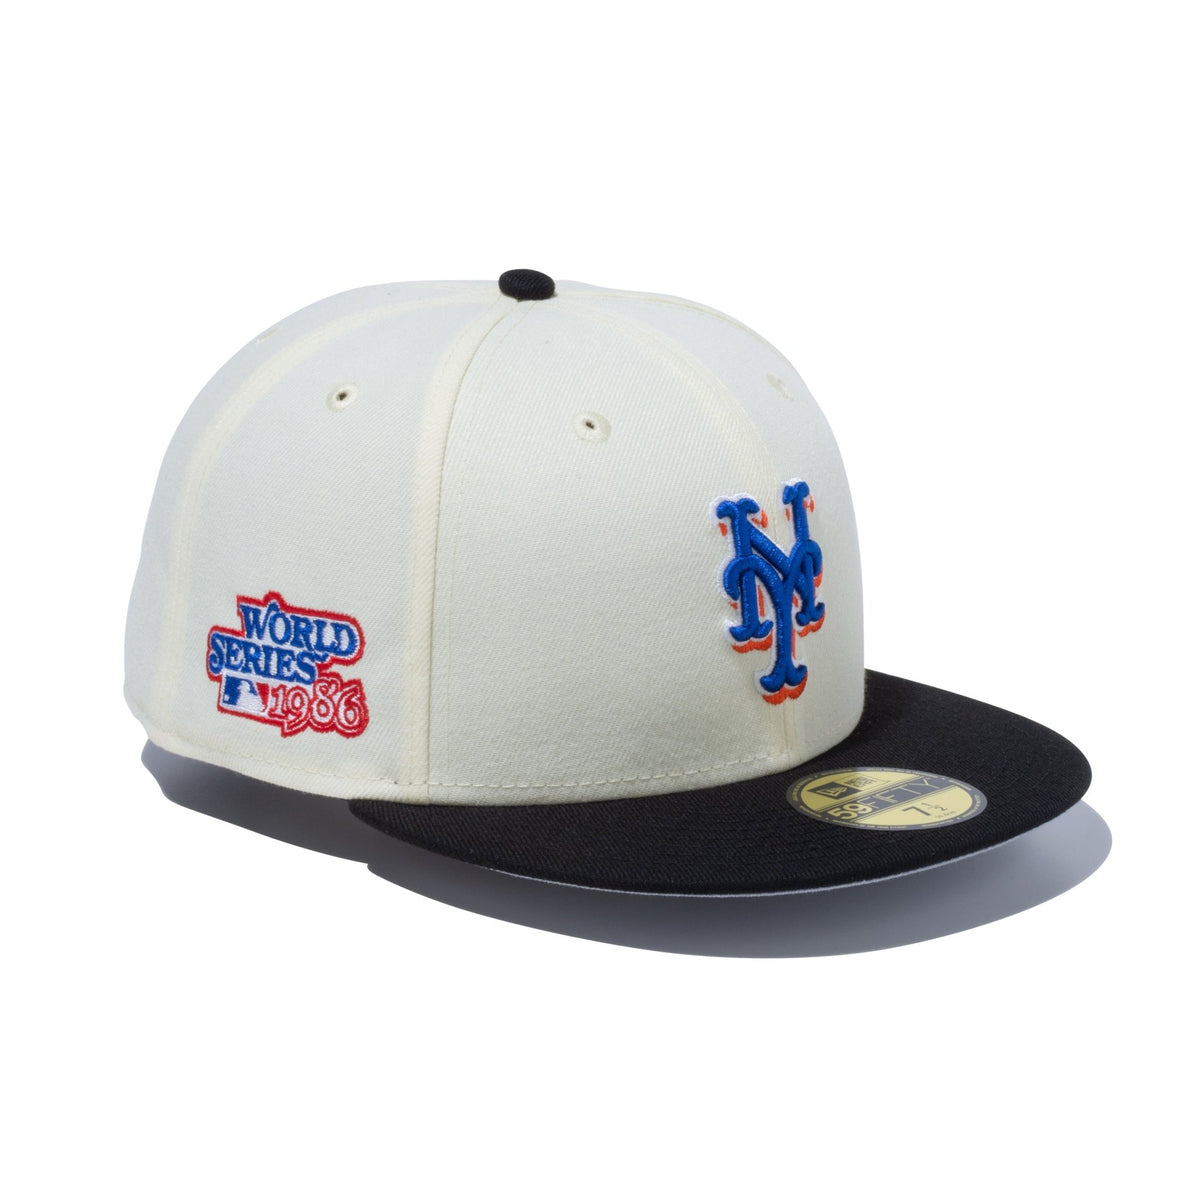 美品 NEW ERA ニューエラ Pre-Curved 59FIFTY MLB Rear Embroidery New York METS ベースボールキャップ 7(55.8cm) ポリエステル 6パネル 帽子 MLB メッツ 野球 メンズ AU2200C